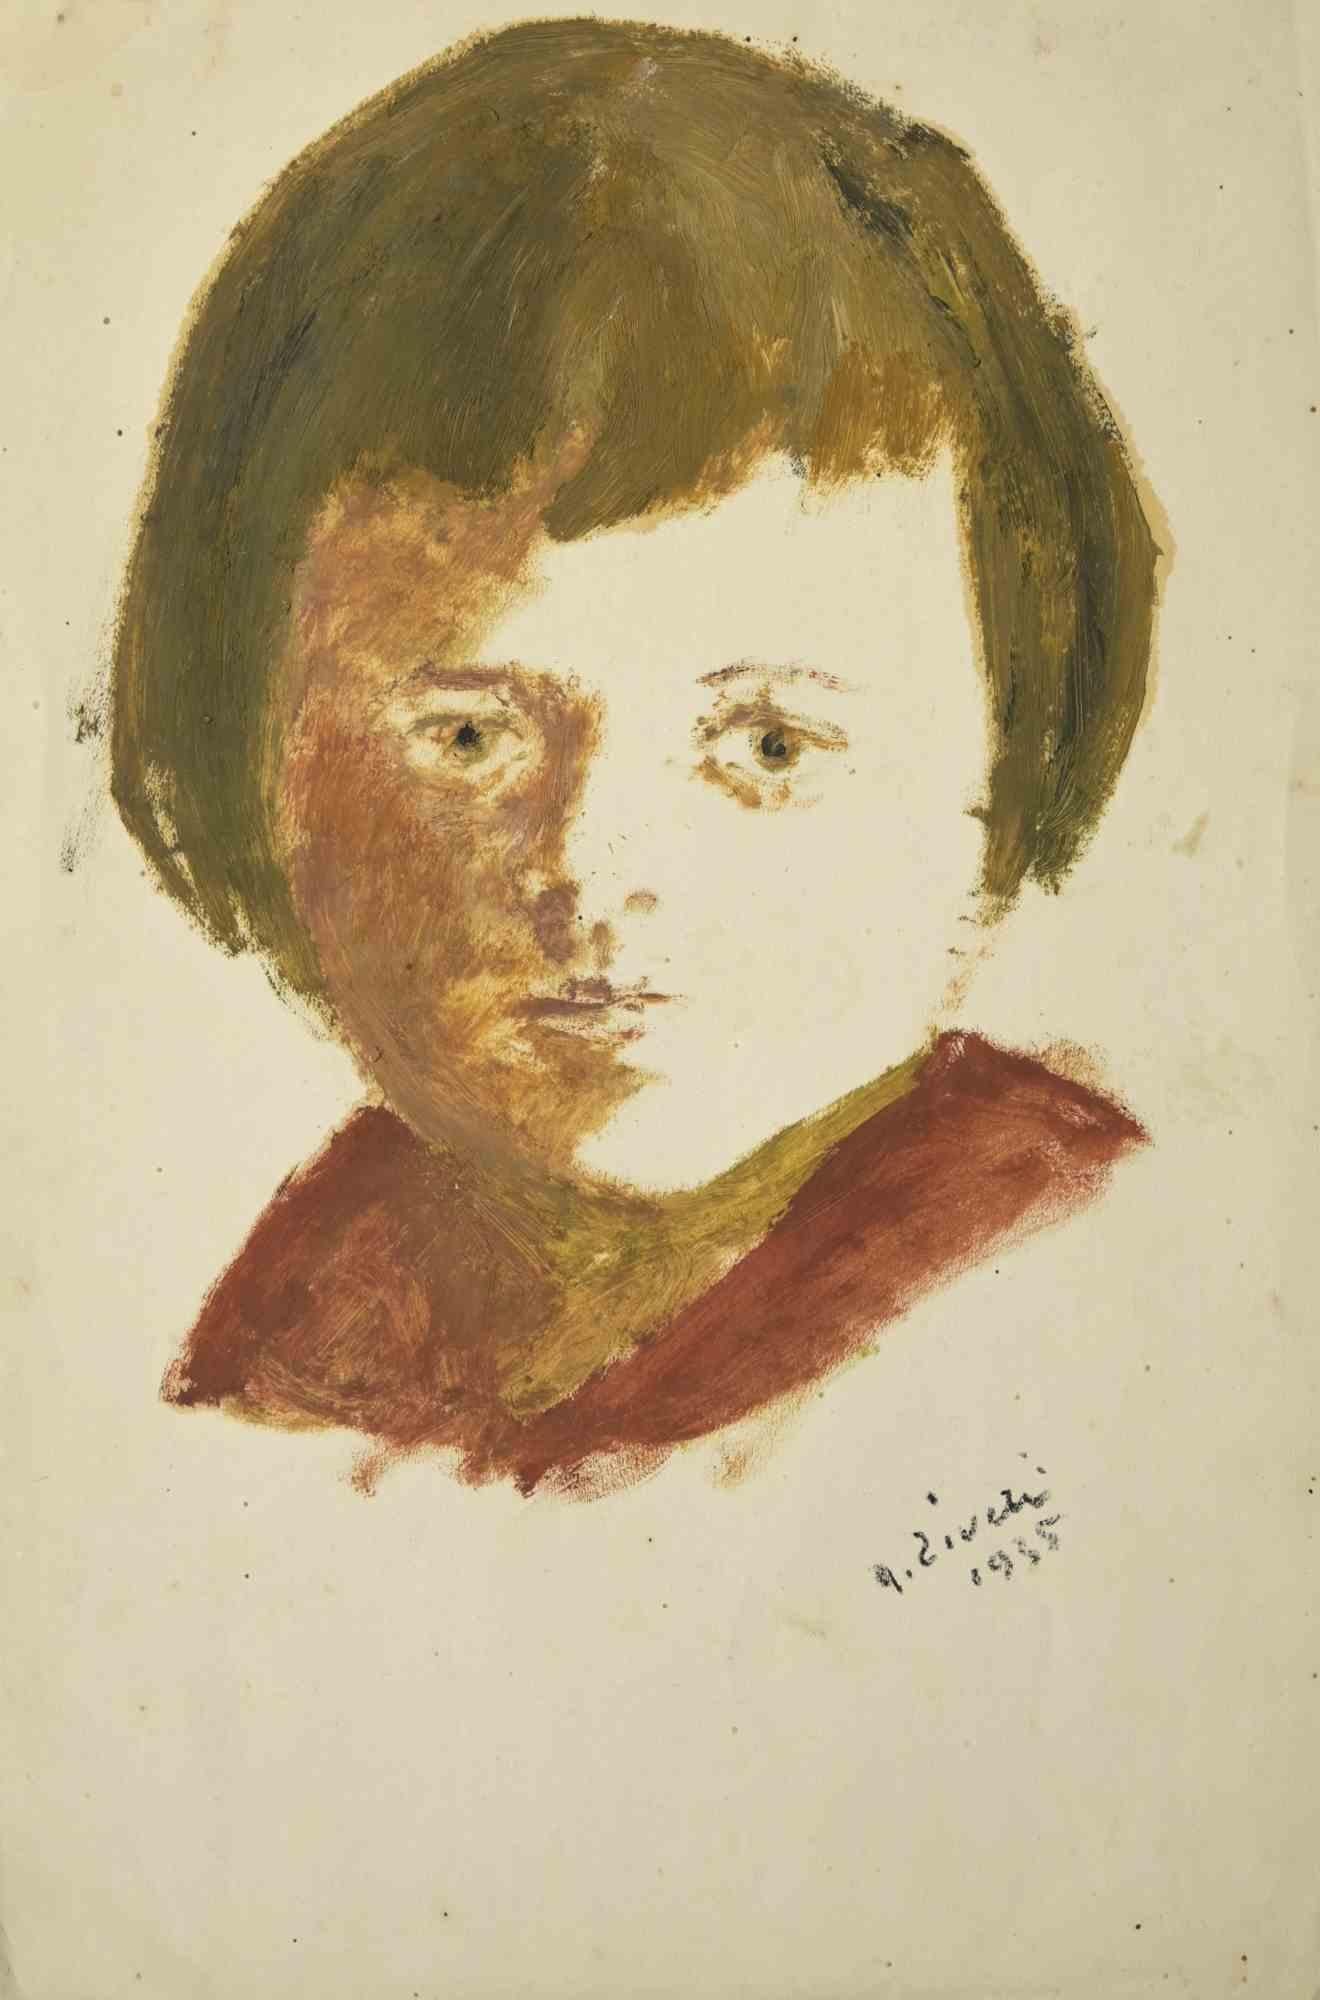 Le Portrait d'enfant est un dessin réalisé par Alberto Ziveri en 1935.

Tempera sur papier.

Signé à la main.

En bonnes conditions.